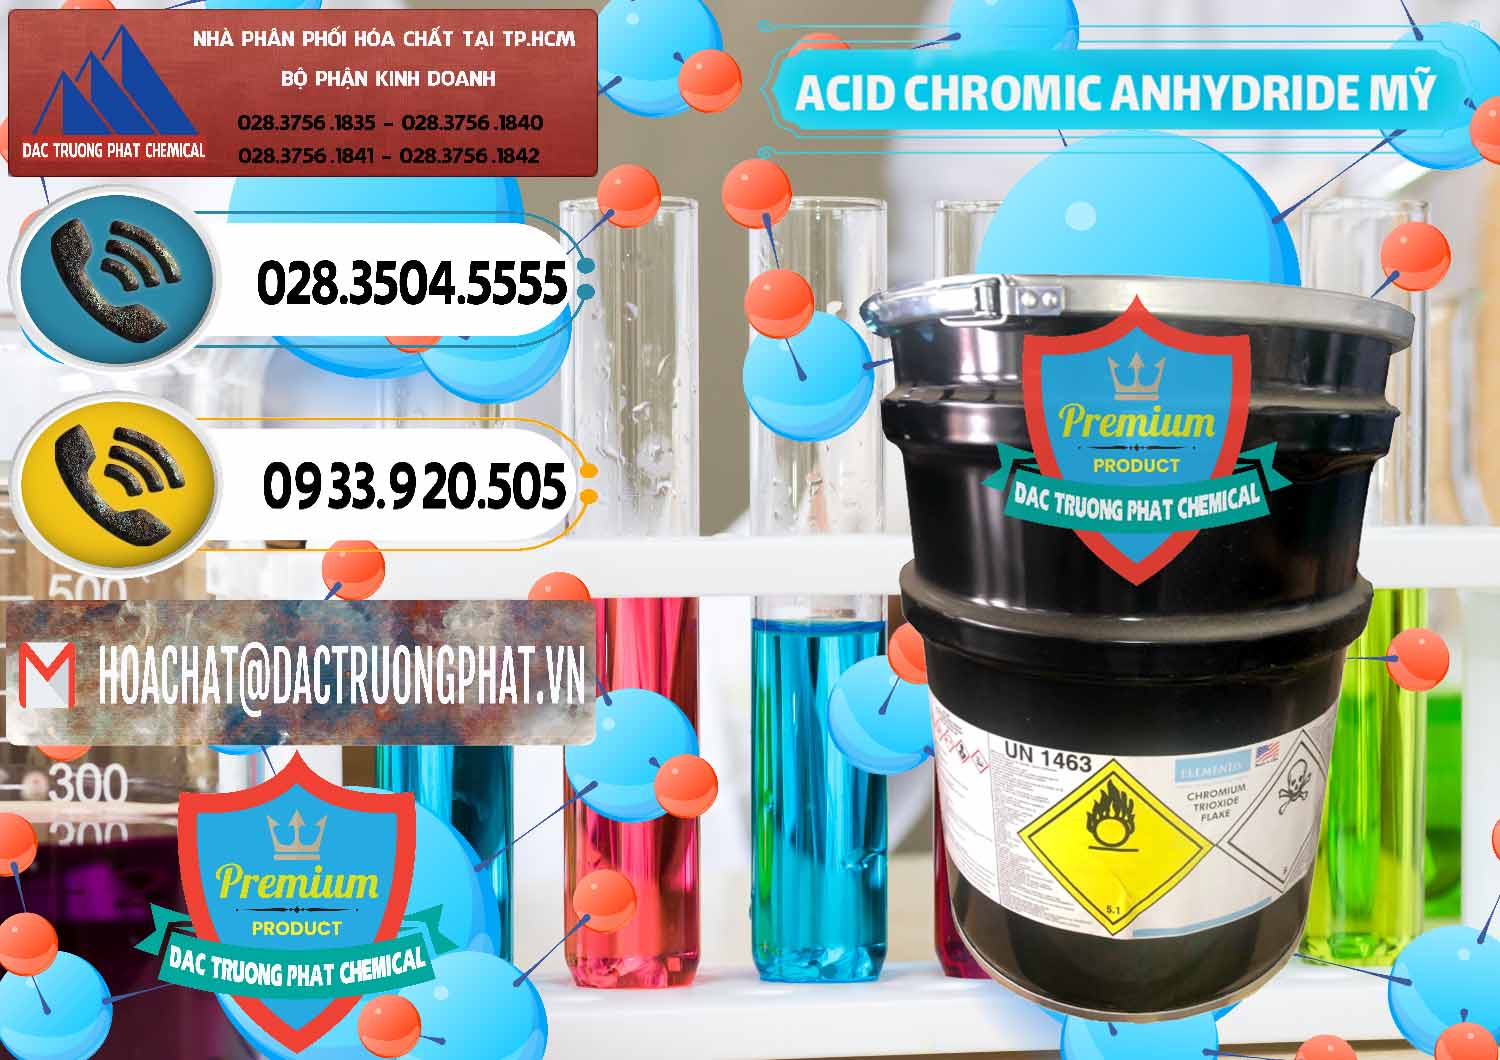 Cung ứng _ bán Acid Chromic Anhydride - Cromic CRO3 USA Mỹ - 0364 - Chuyên bán và phân phối hóa chất tại TP.HCM - hoachatdetnhuom.vn